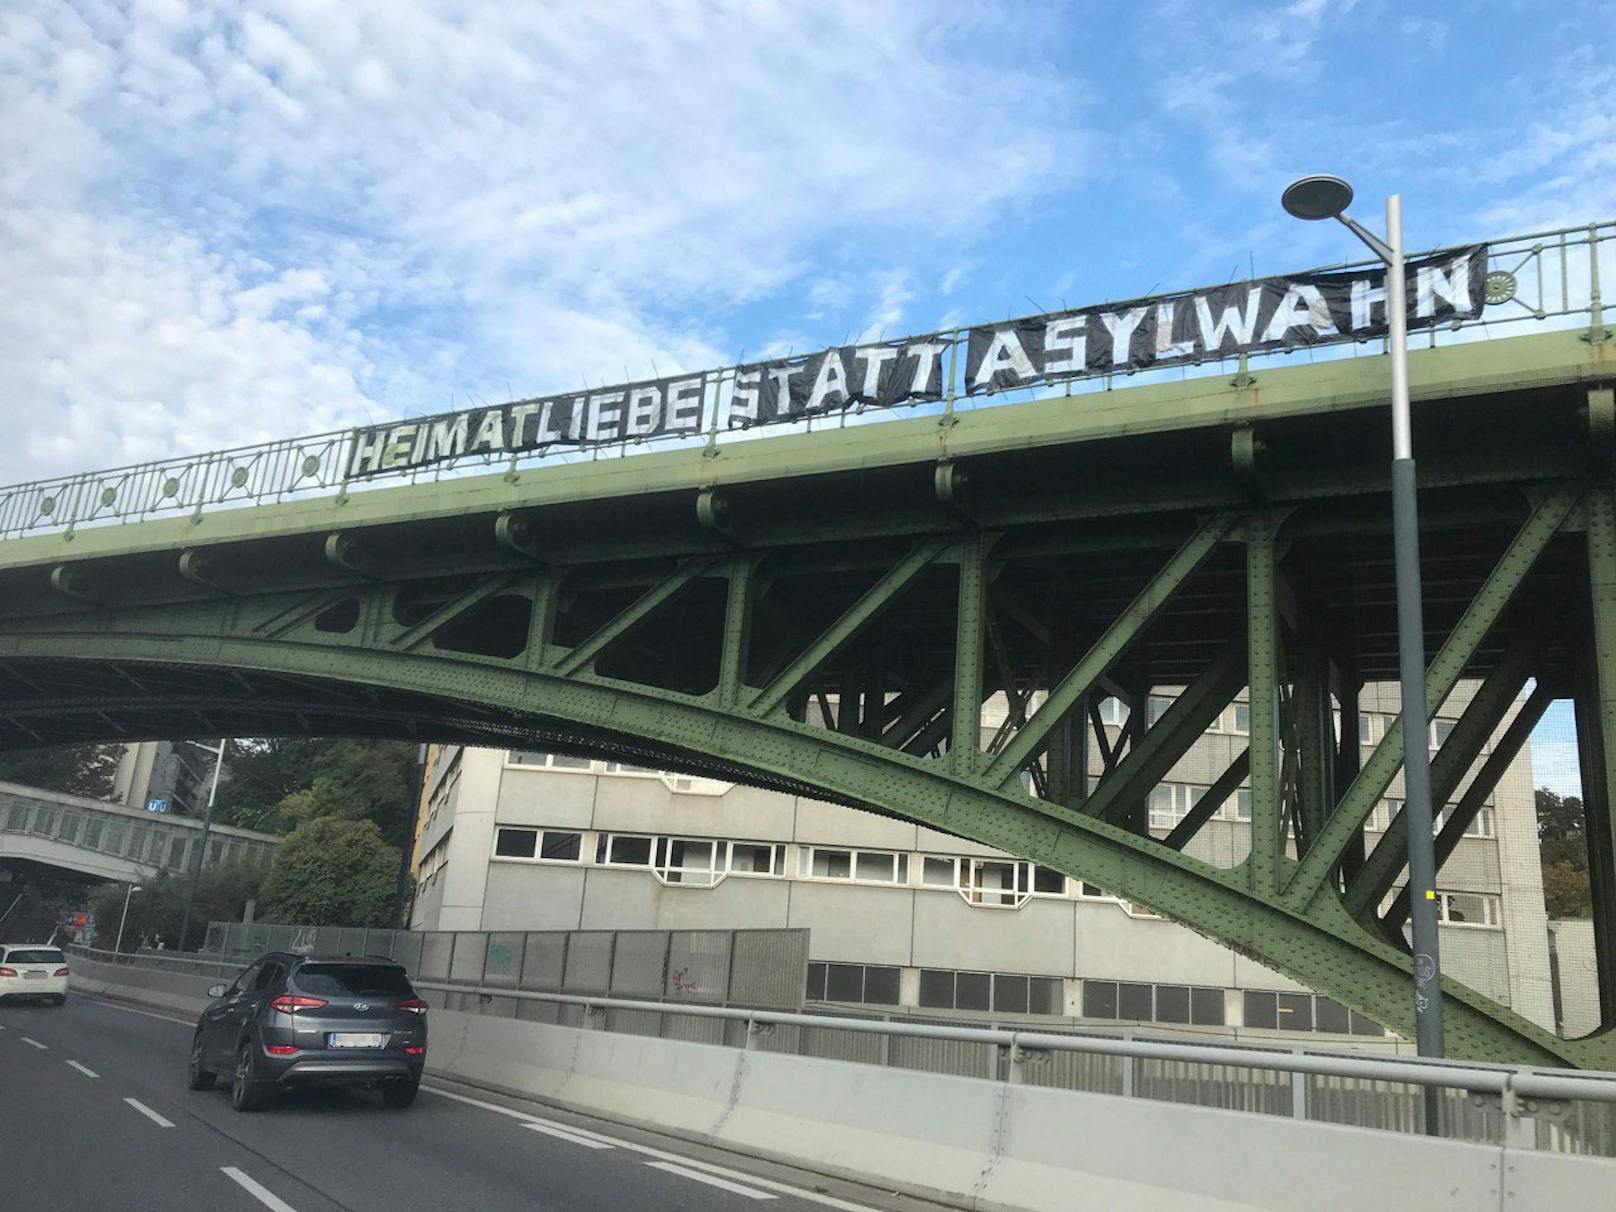 Ein Leser entdeckte das Banner auf der Brücke.